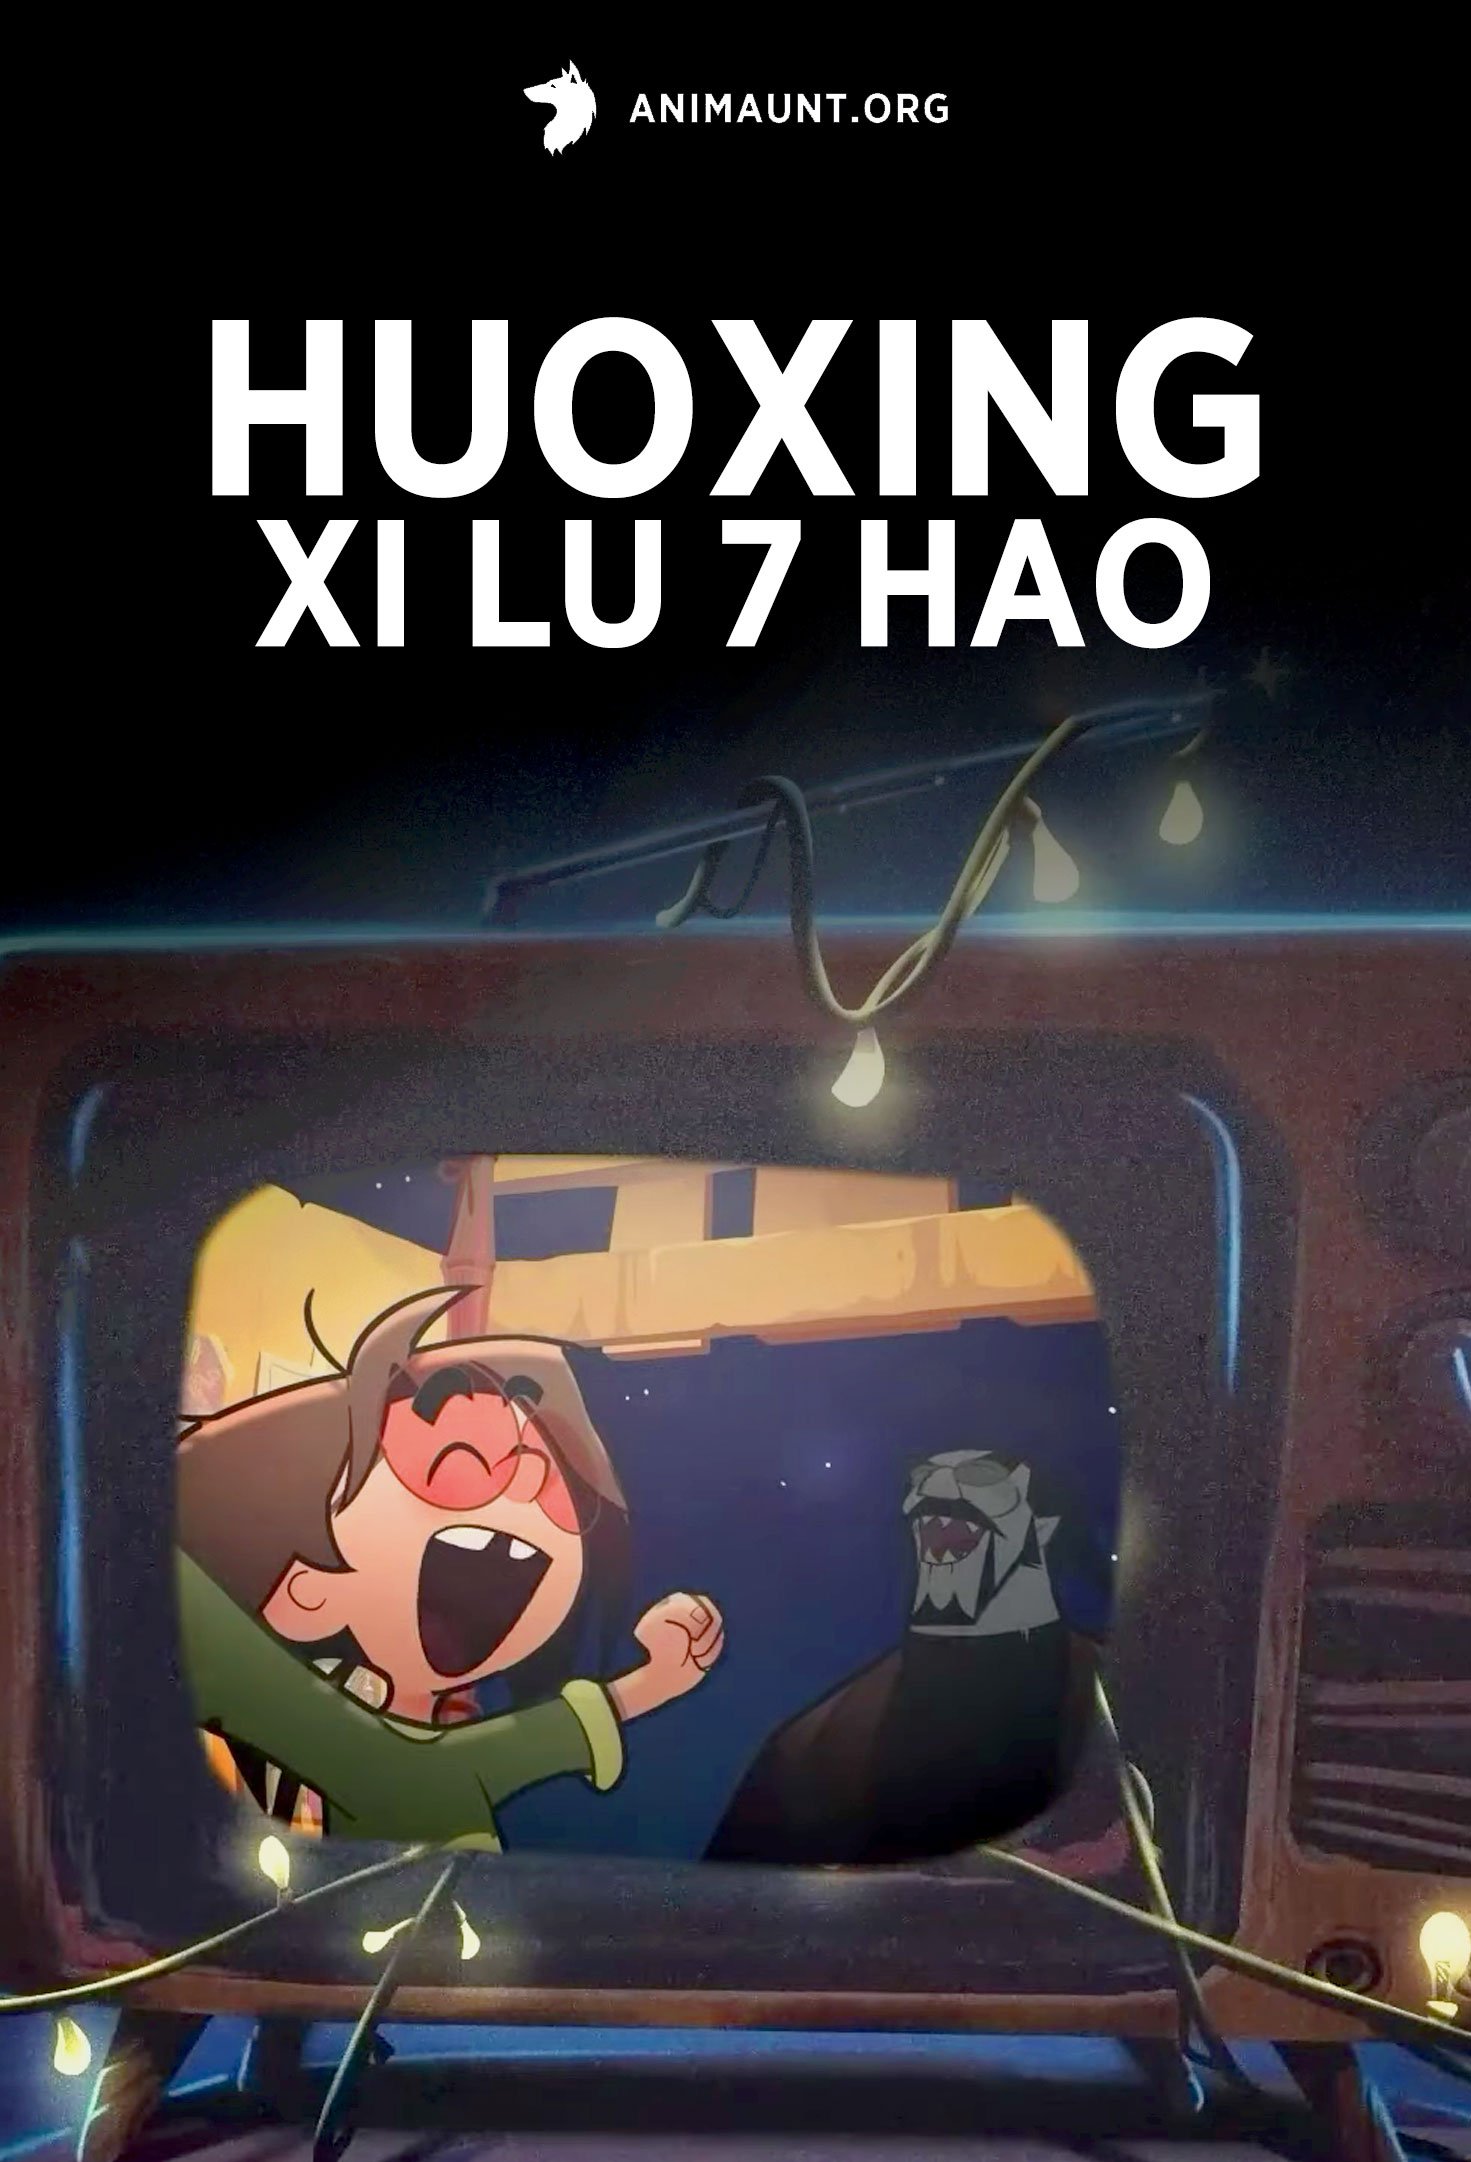 Huoxing Xi Lu 7 Hao